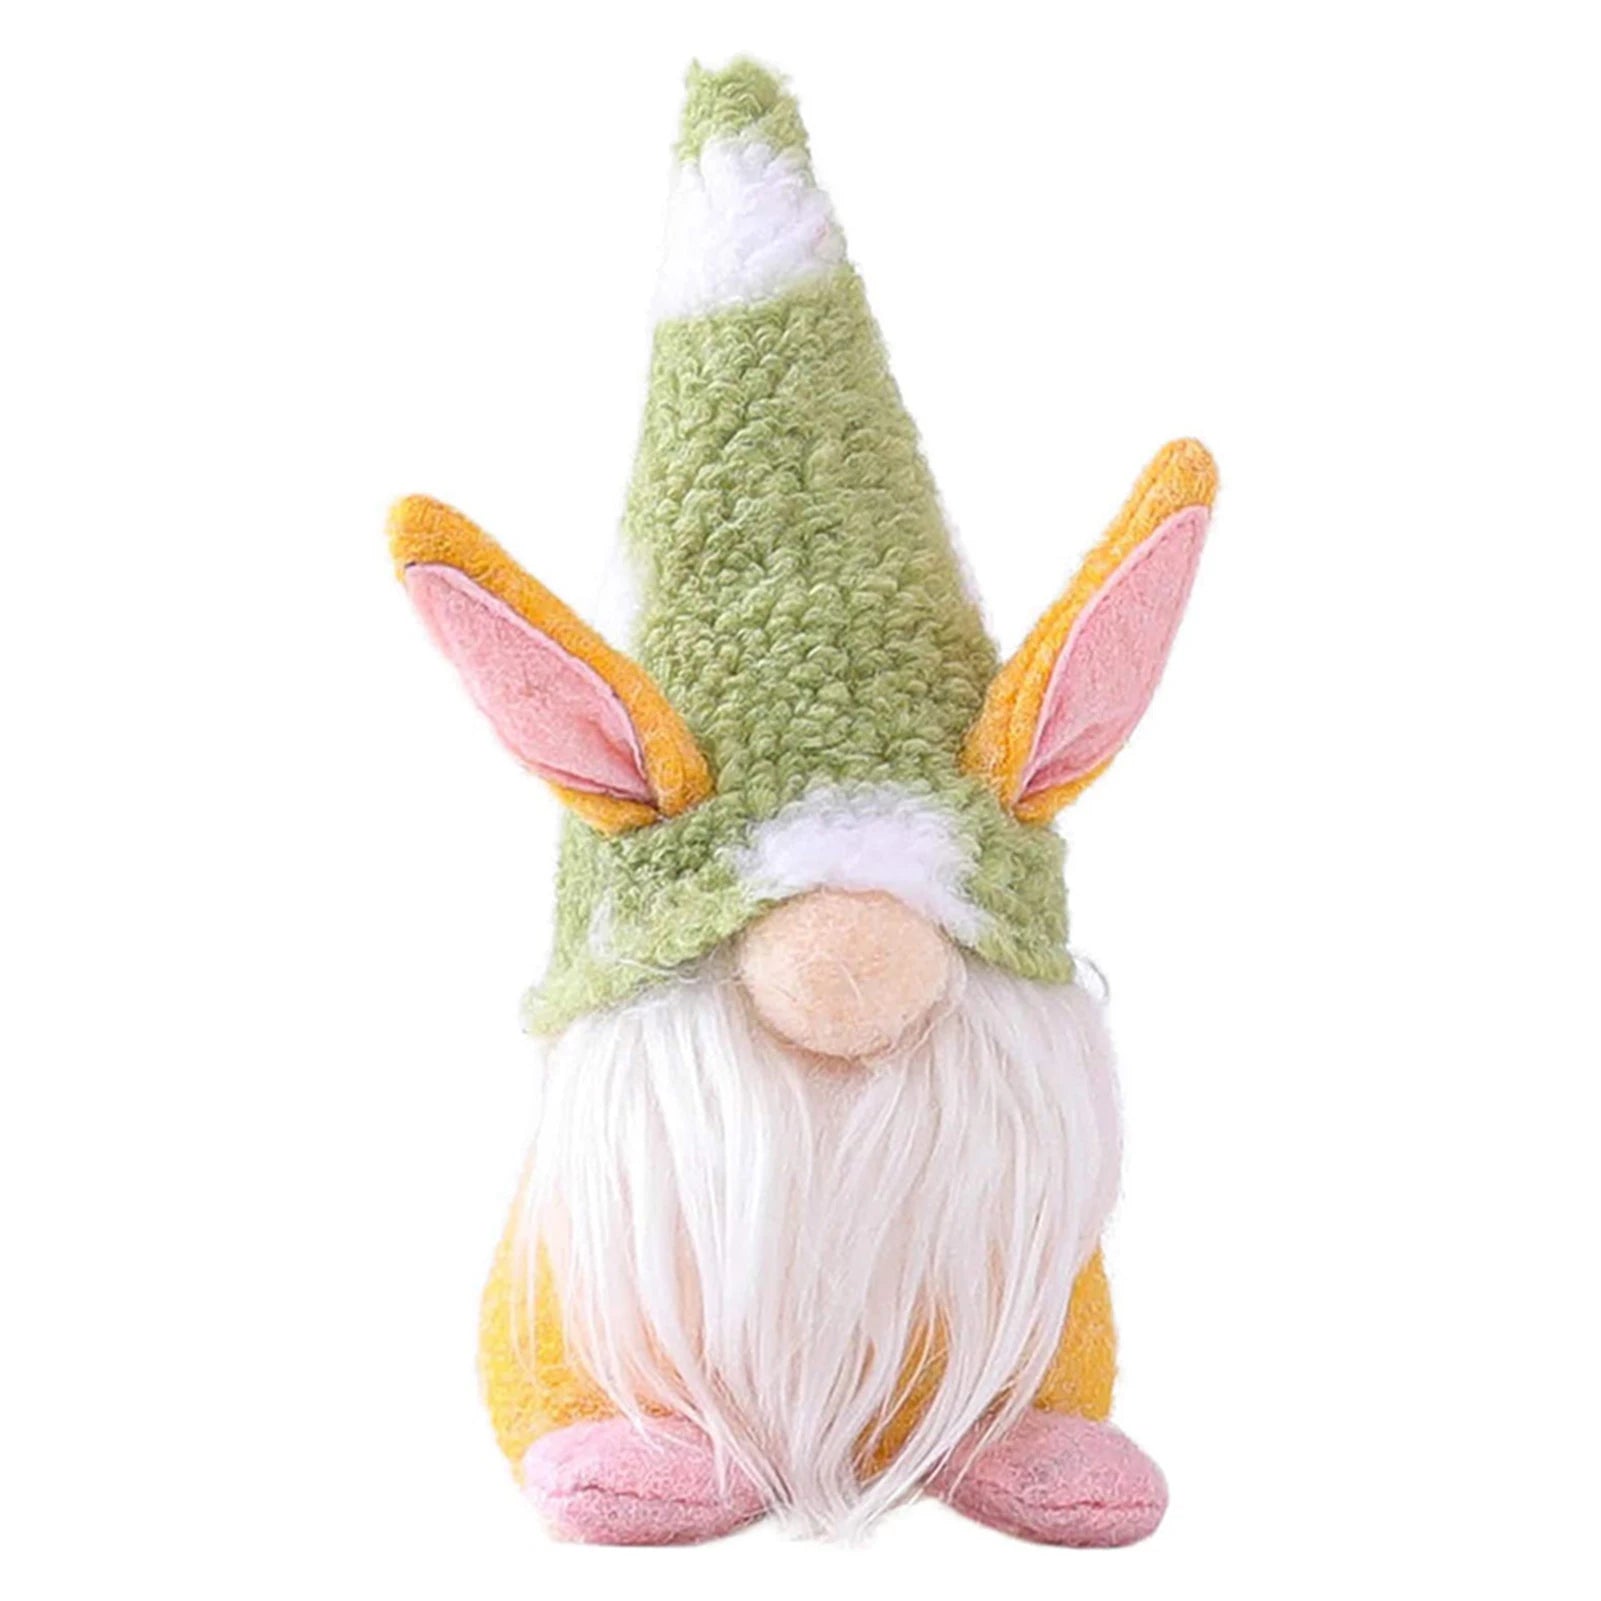 Shop Spring Magic Gnome For Garden Decor- Every Girl Loves Sparkles